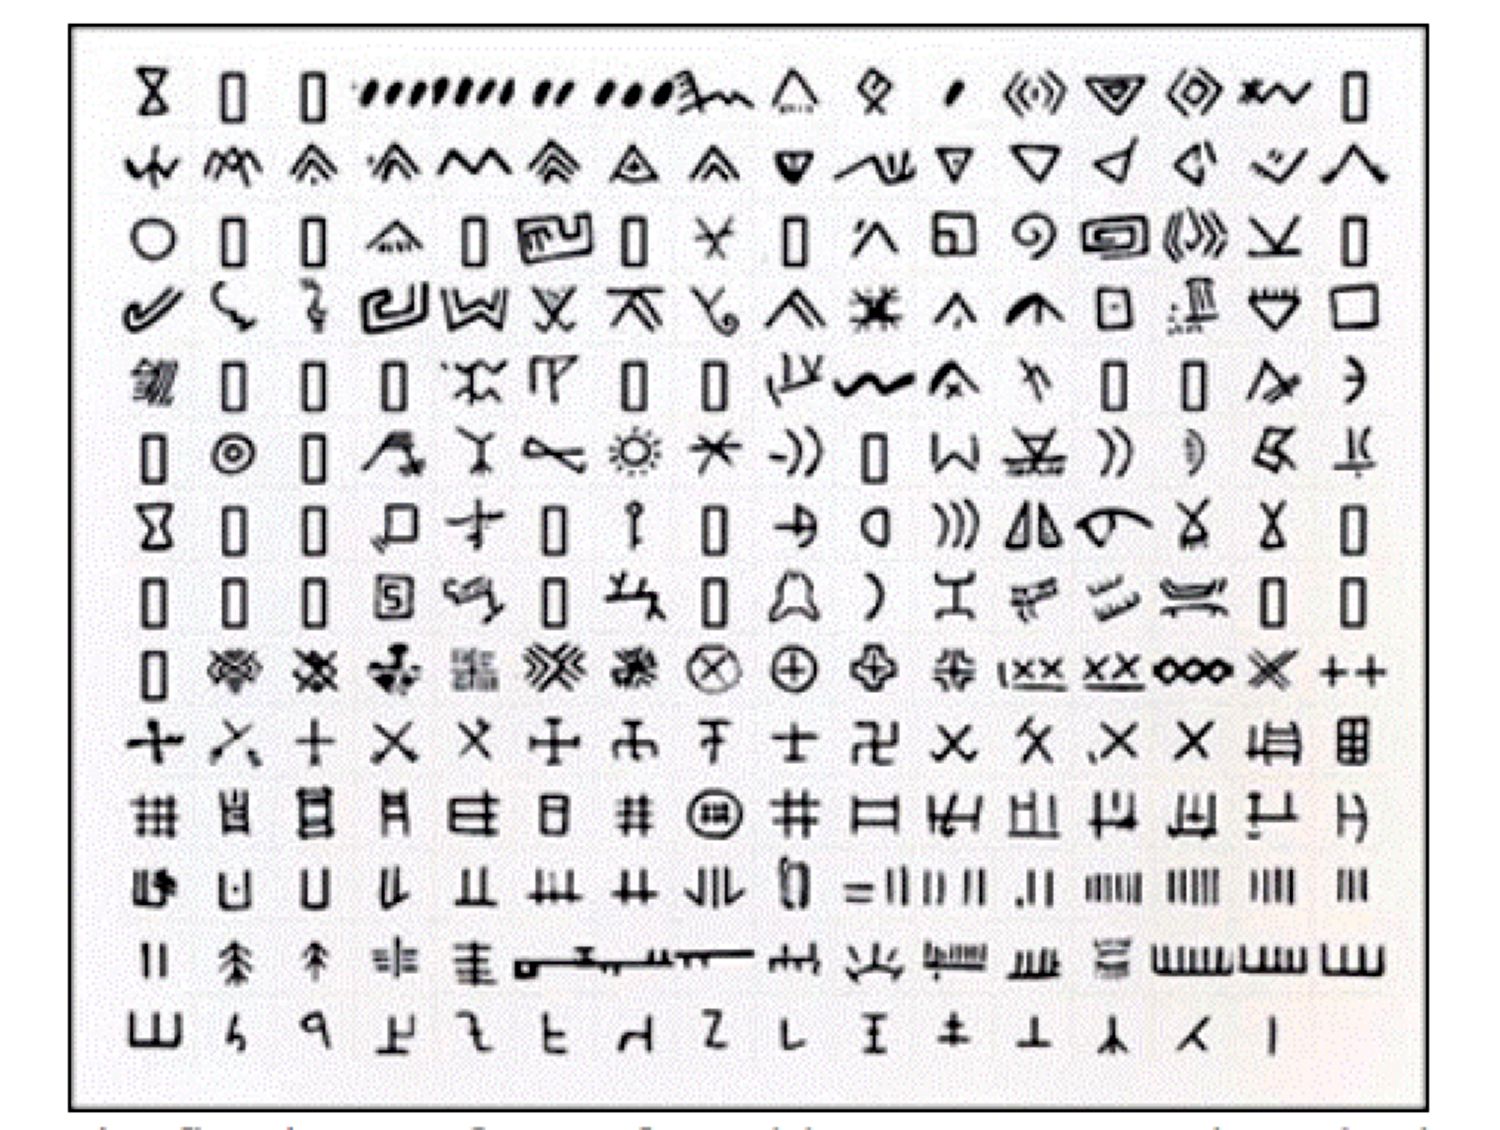 Prima formă cunoscută de scriere din lume a fost creată în cultura Vinča. Aproximativ 700 de caractere și simboluri